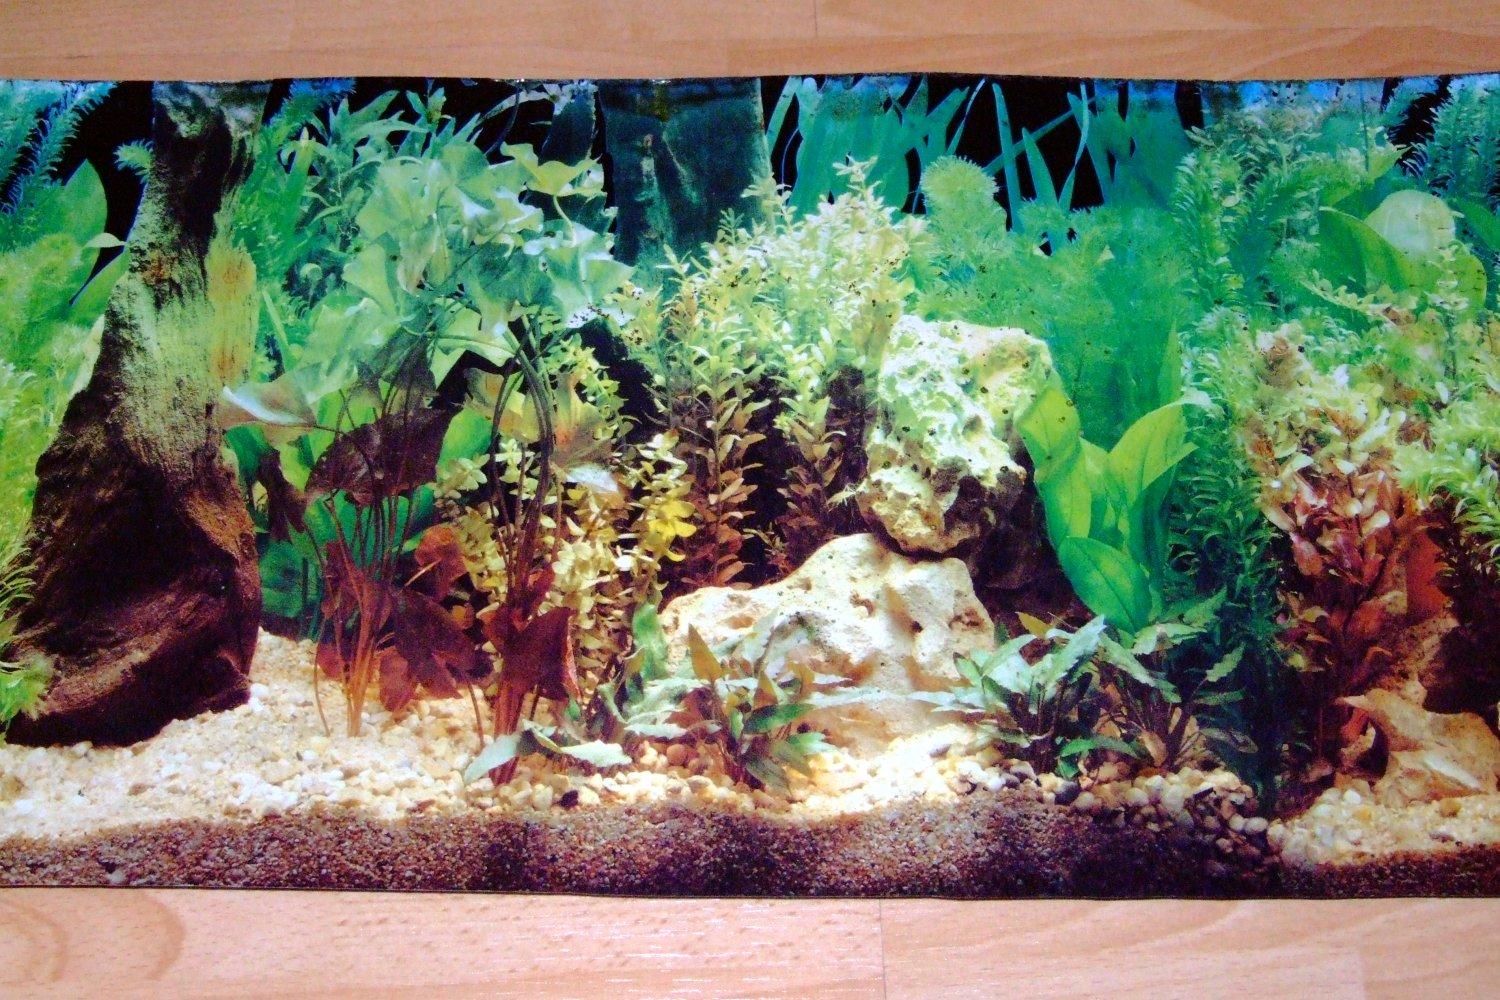 Aquarium Scene backgrounds